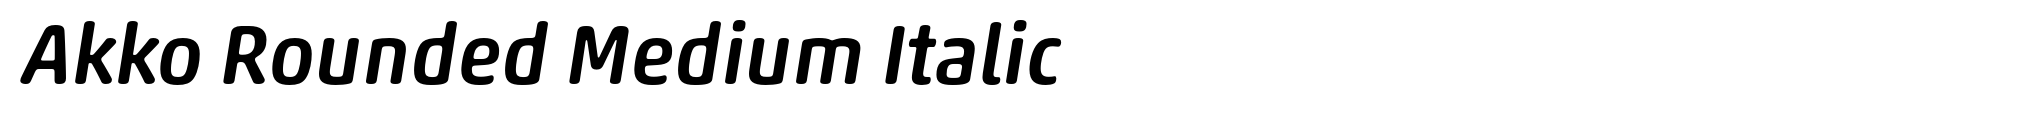 Akko Rounded Medium Italic image